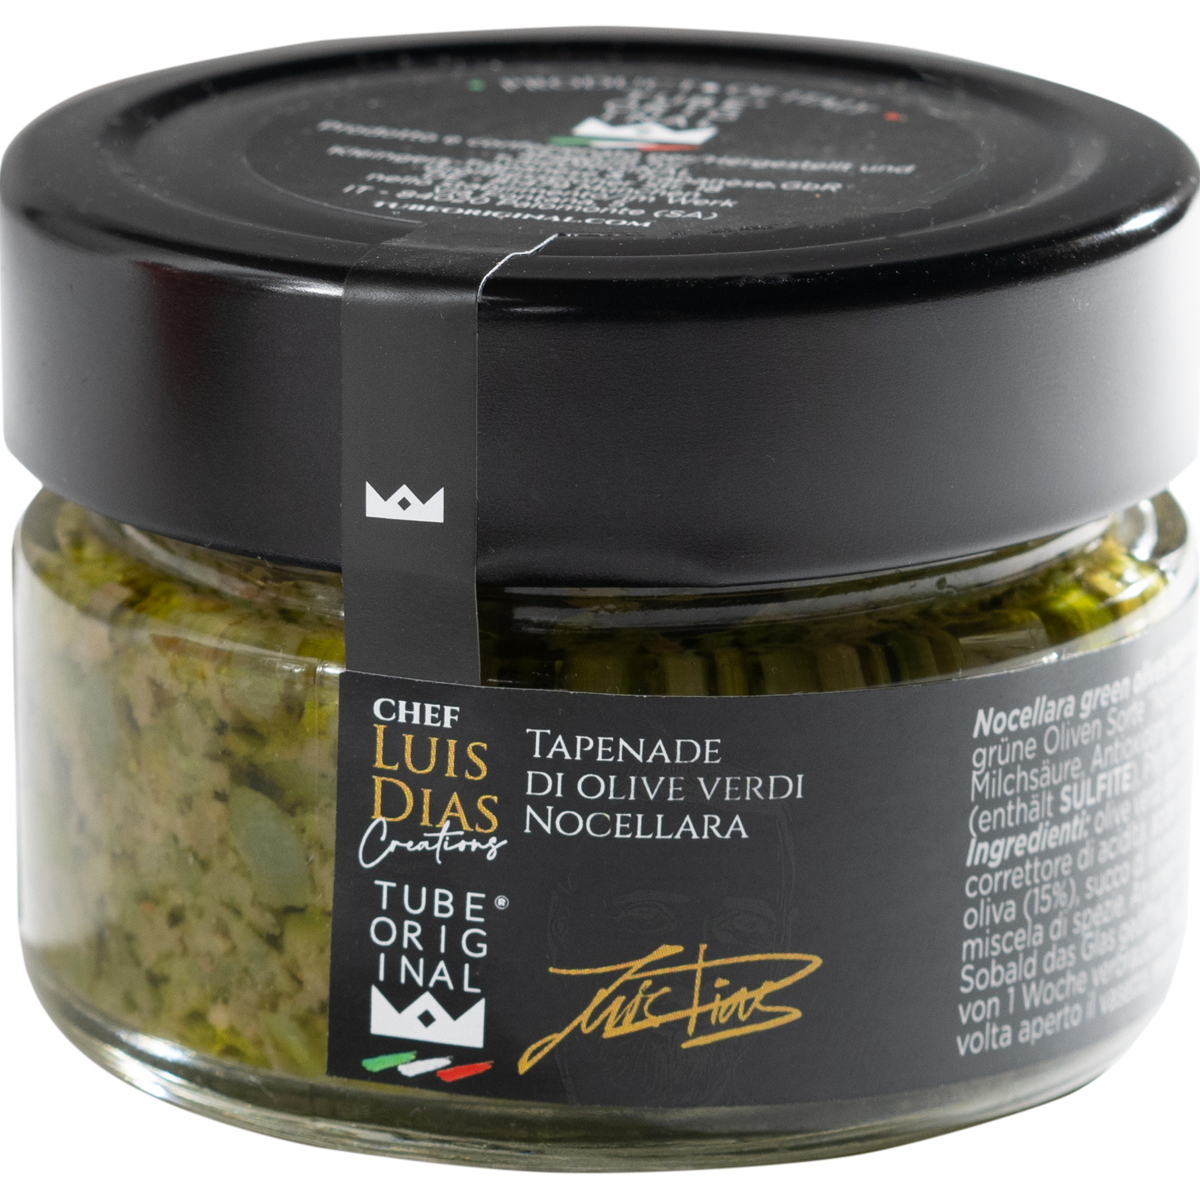 Tapenade made from green Nocellara olives